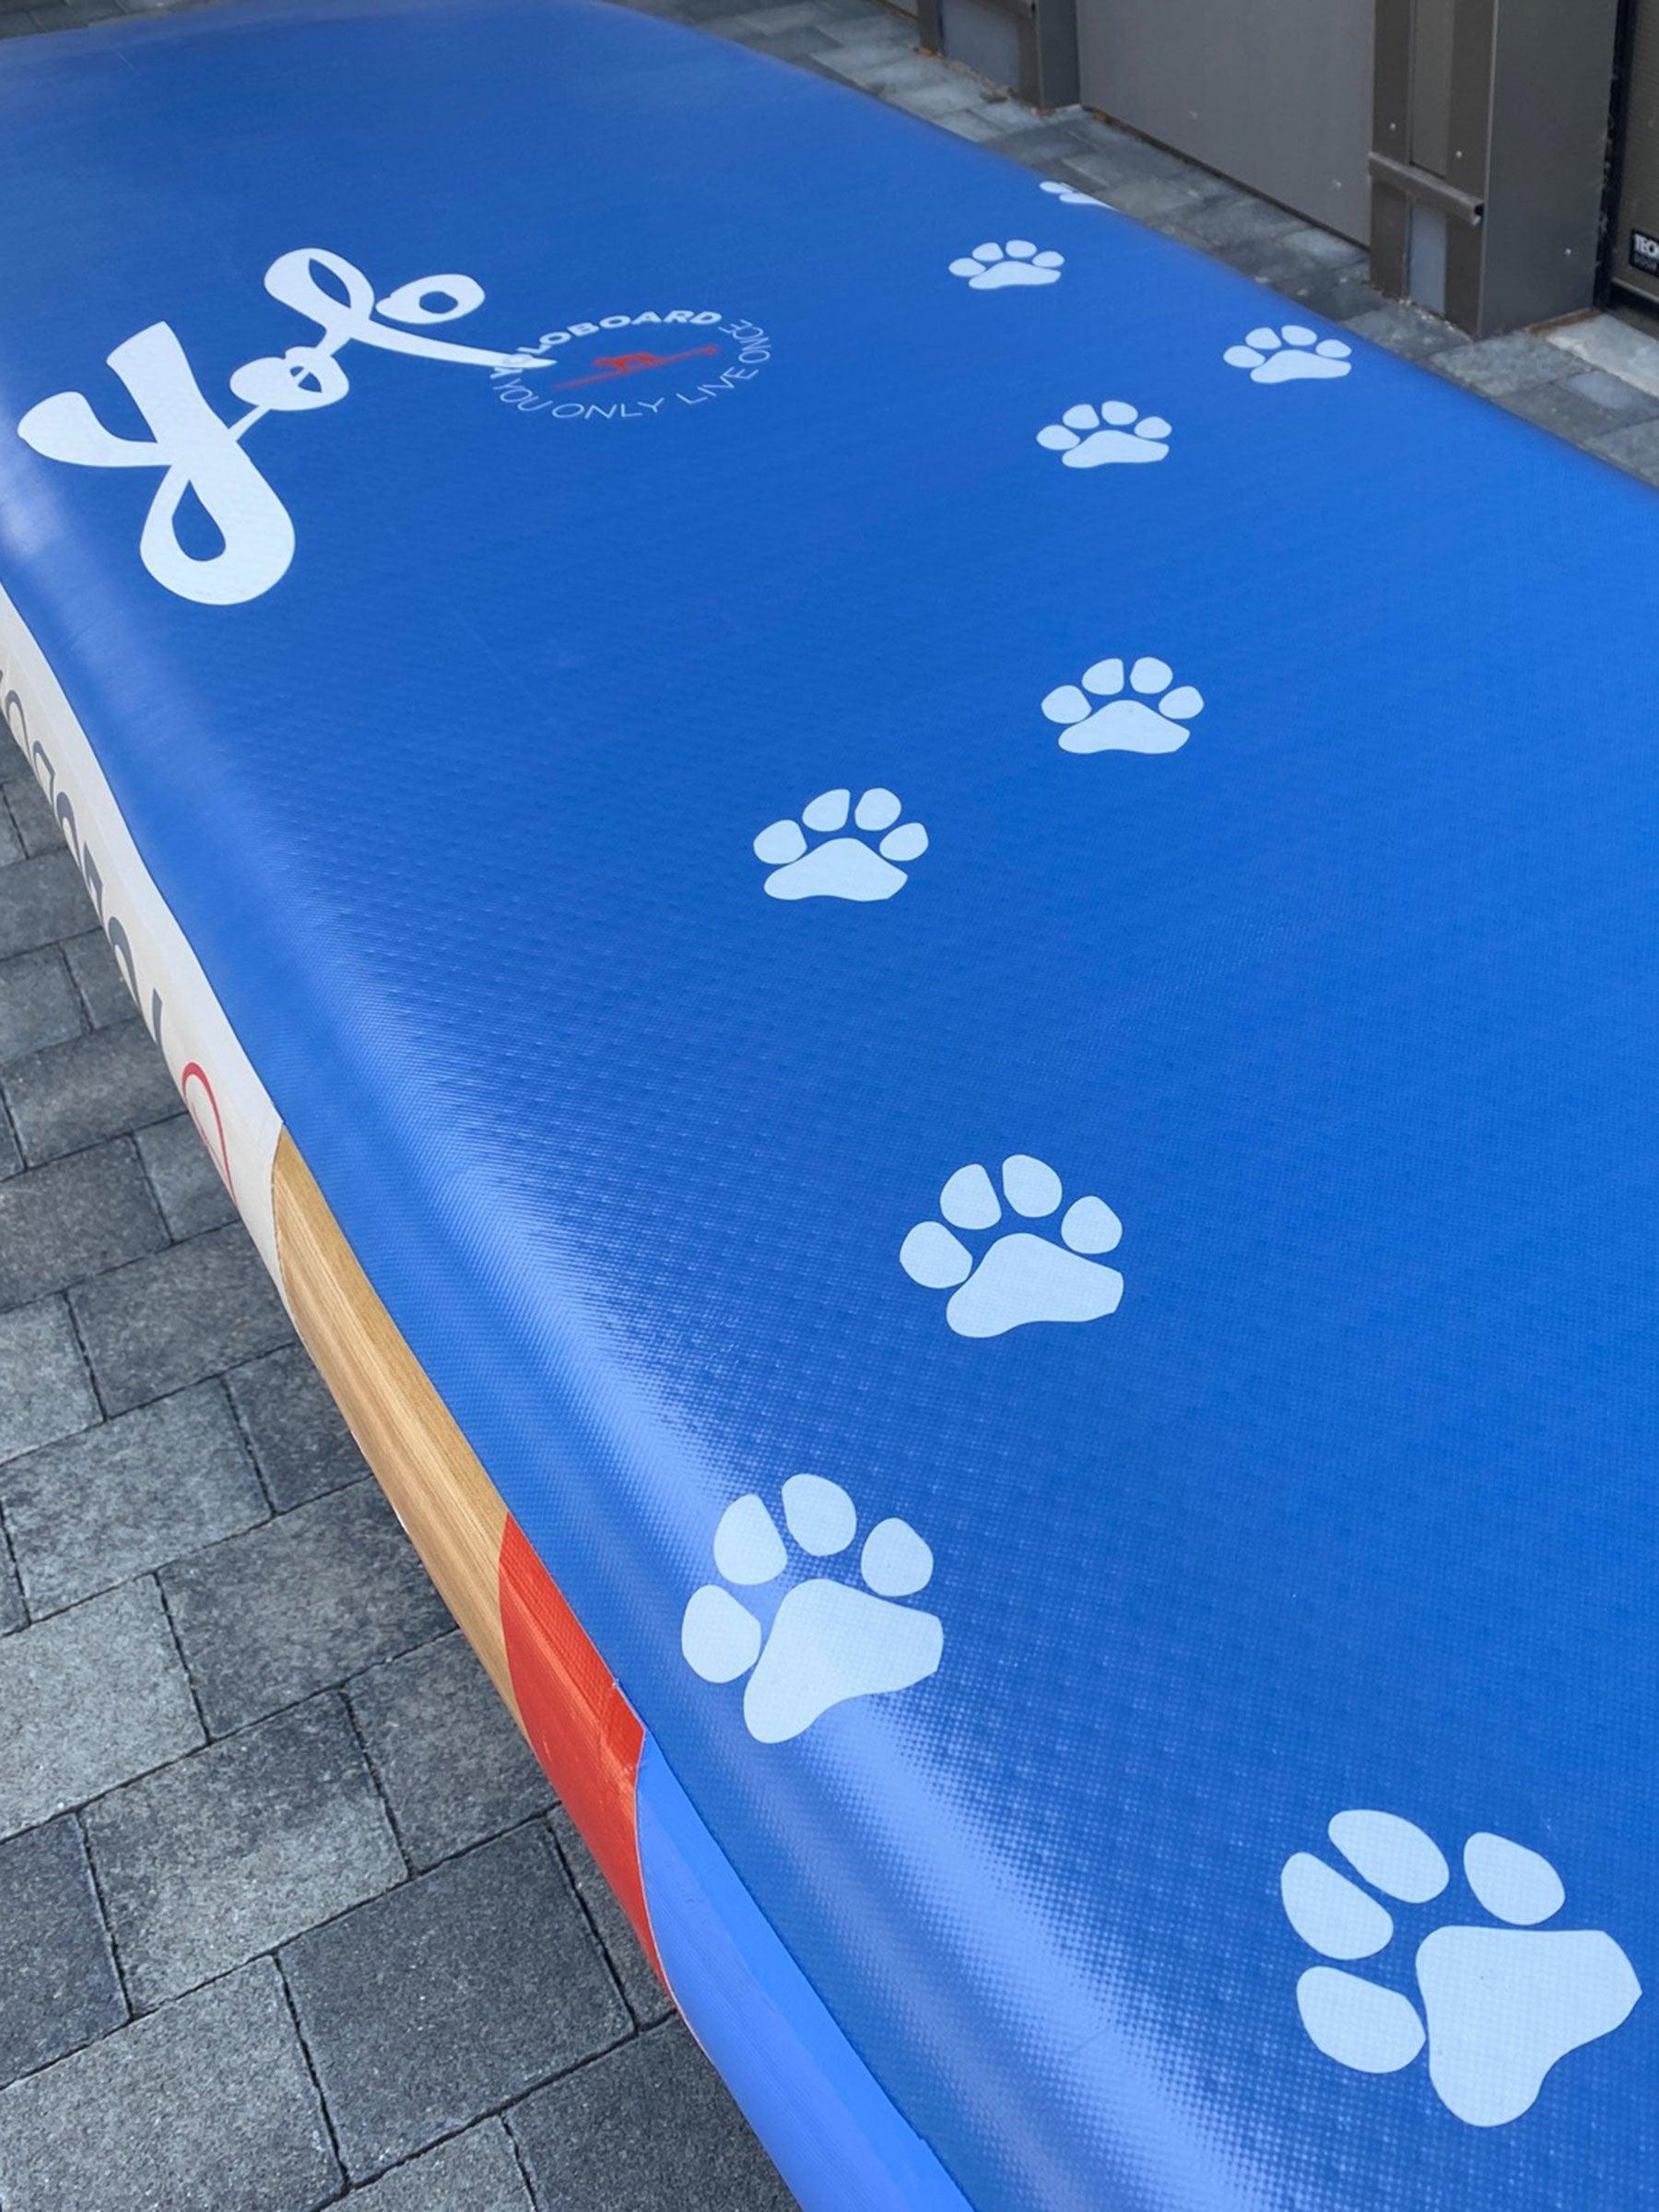 Produktbild von SUP " Dogwood-Coastal Blue 12'0" " der Marke Yoloboard für 799.00 €. Erhältlich online bei Lite Venture ( www.liteventure.de )